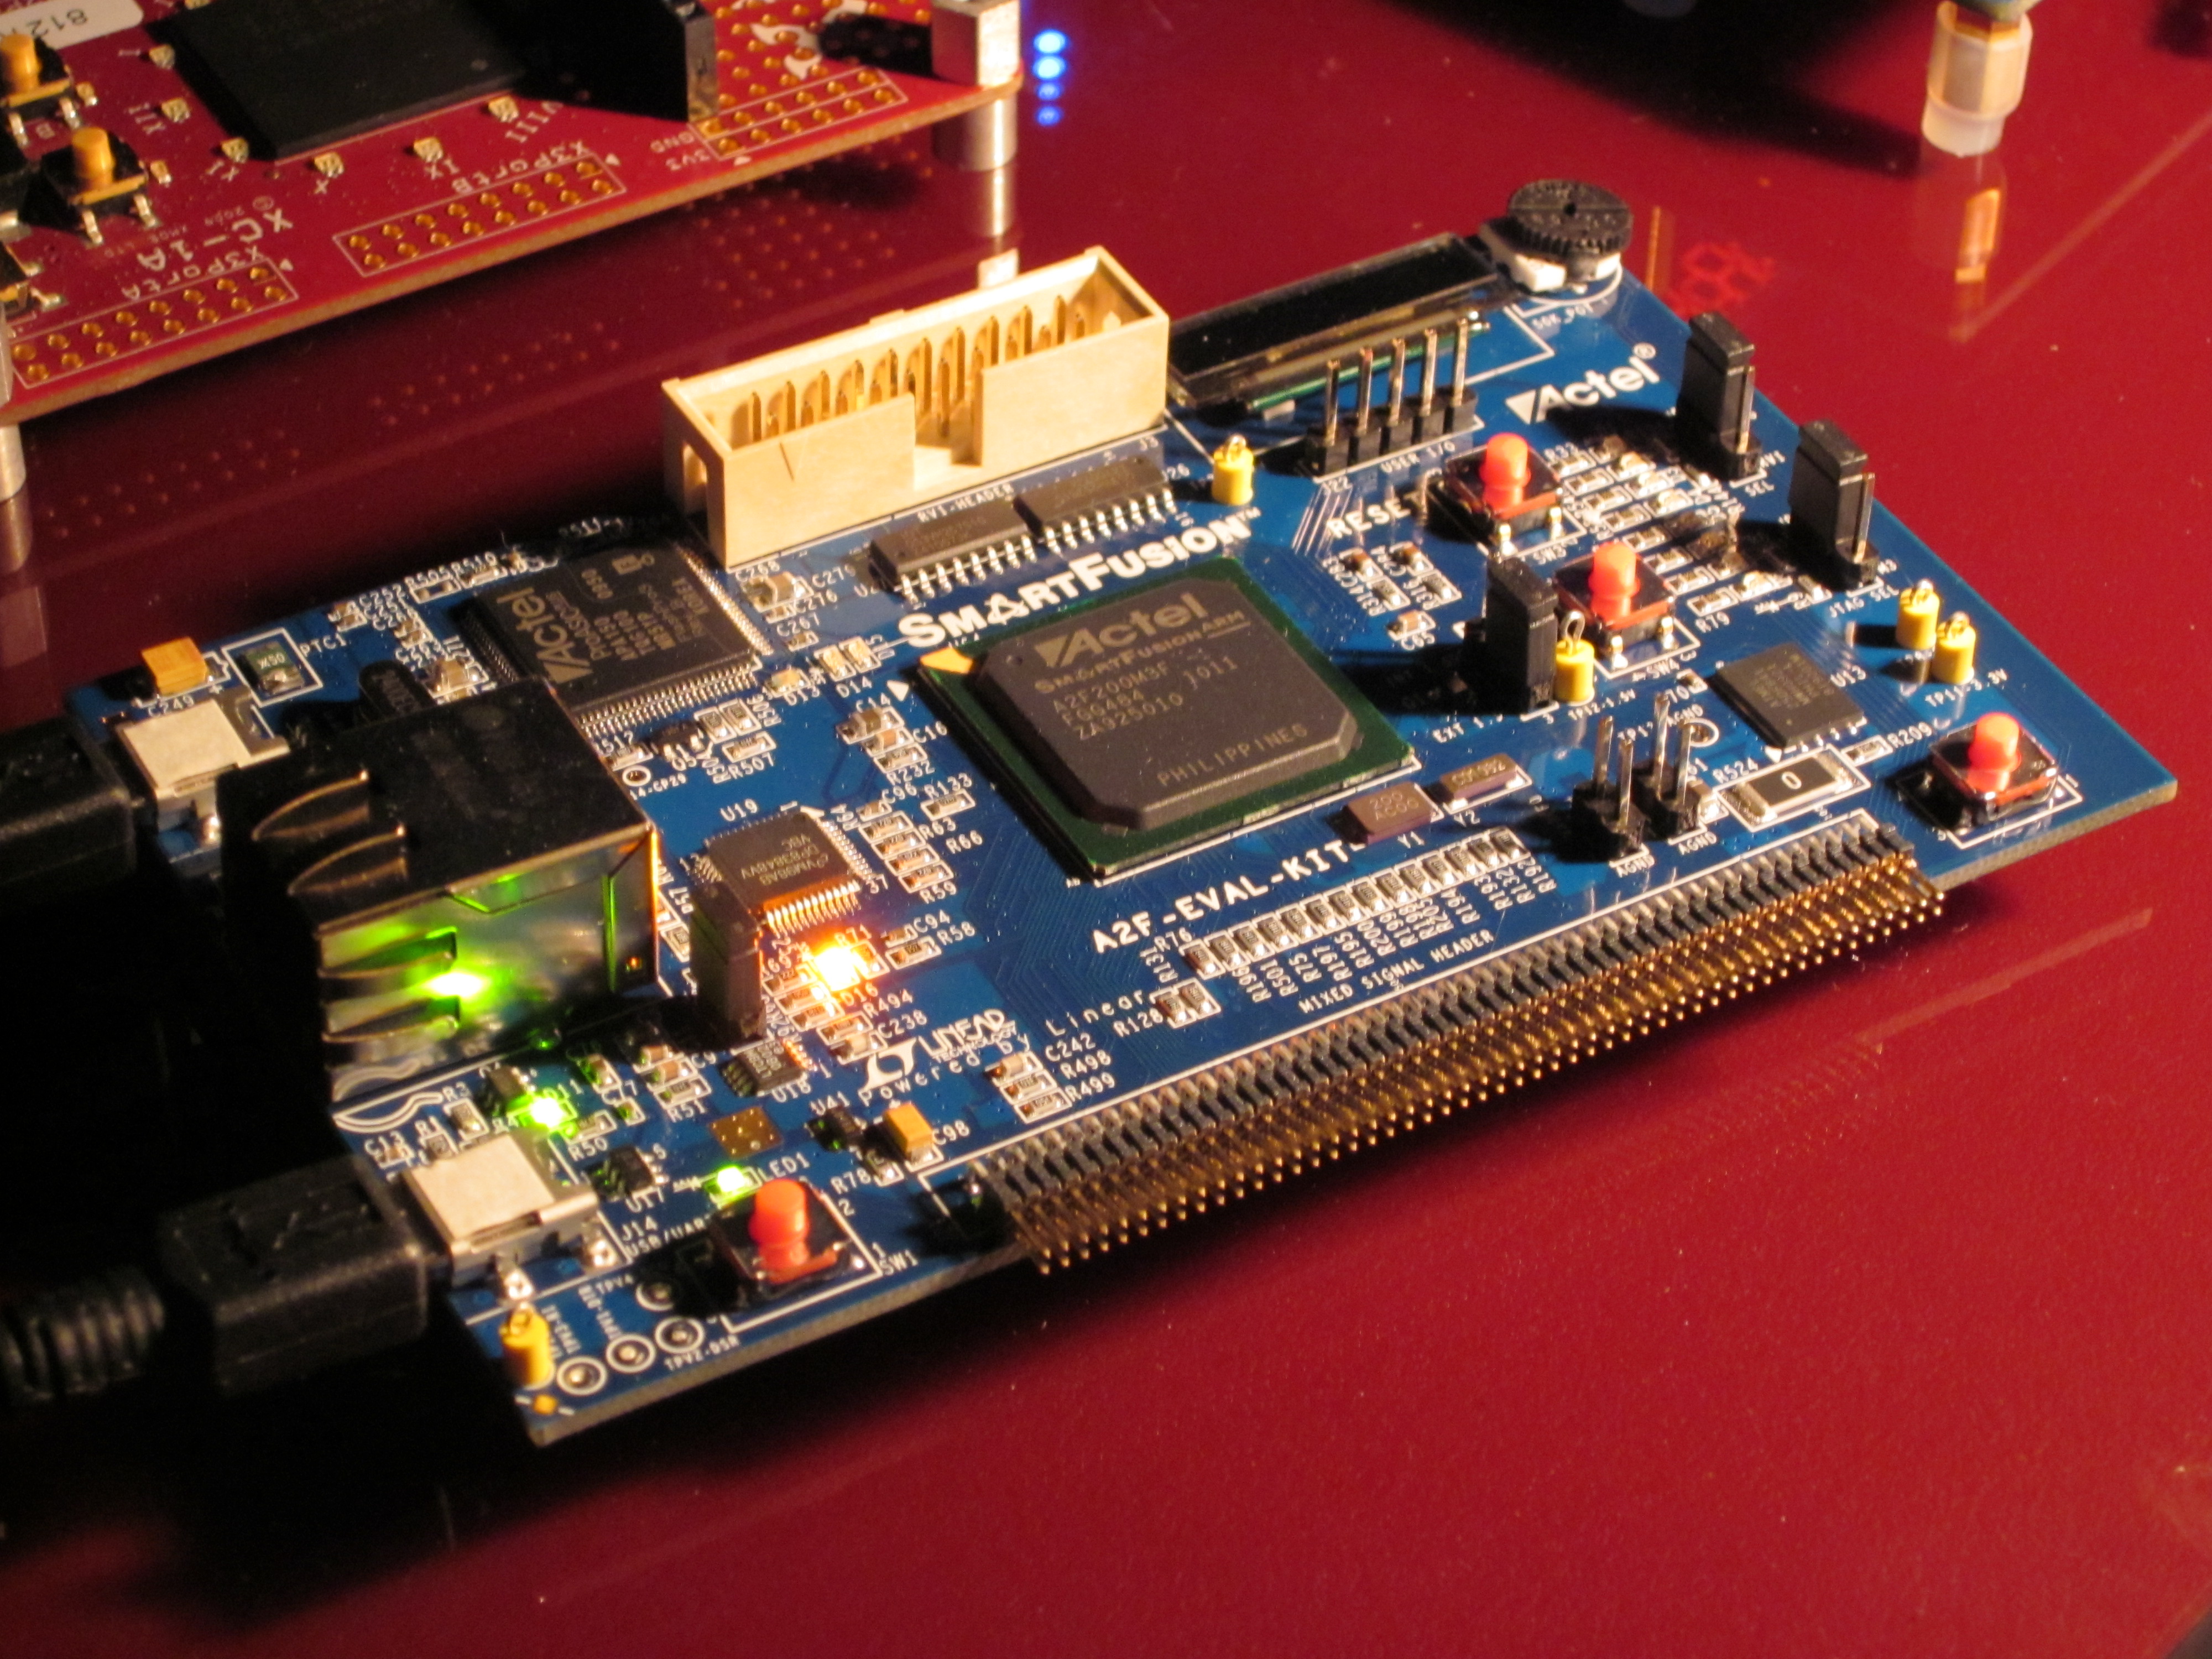 Actel SmartFusion FPGA + ARM Evaluation Board